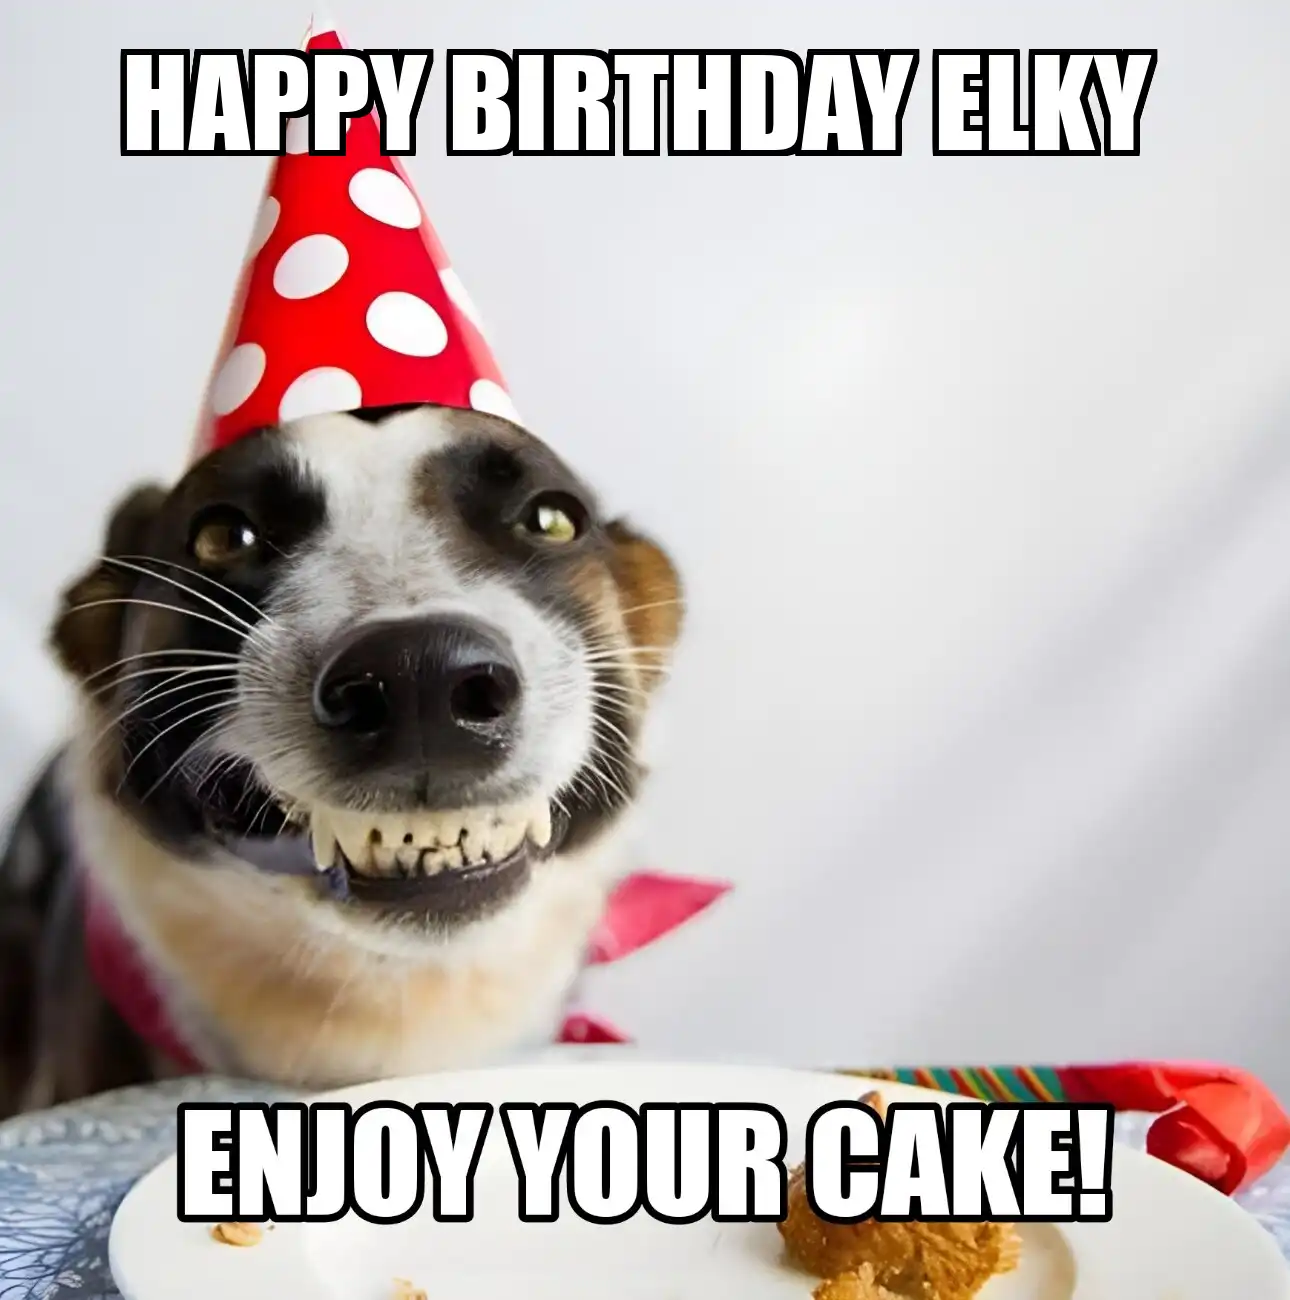 Happy Birthday Elky Enjoy Your Cake Dog Meme